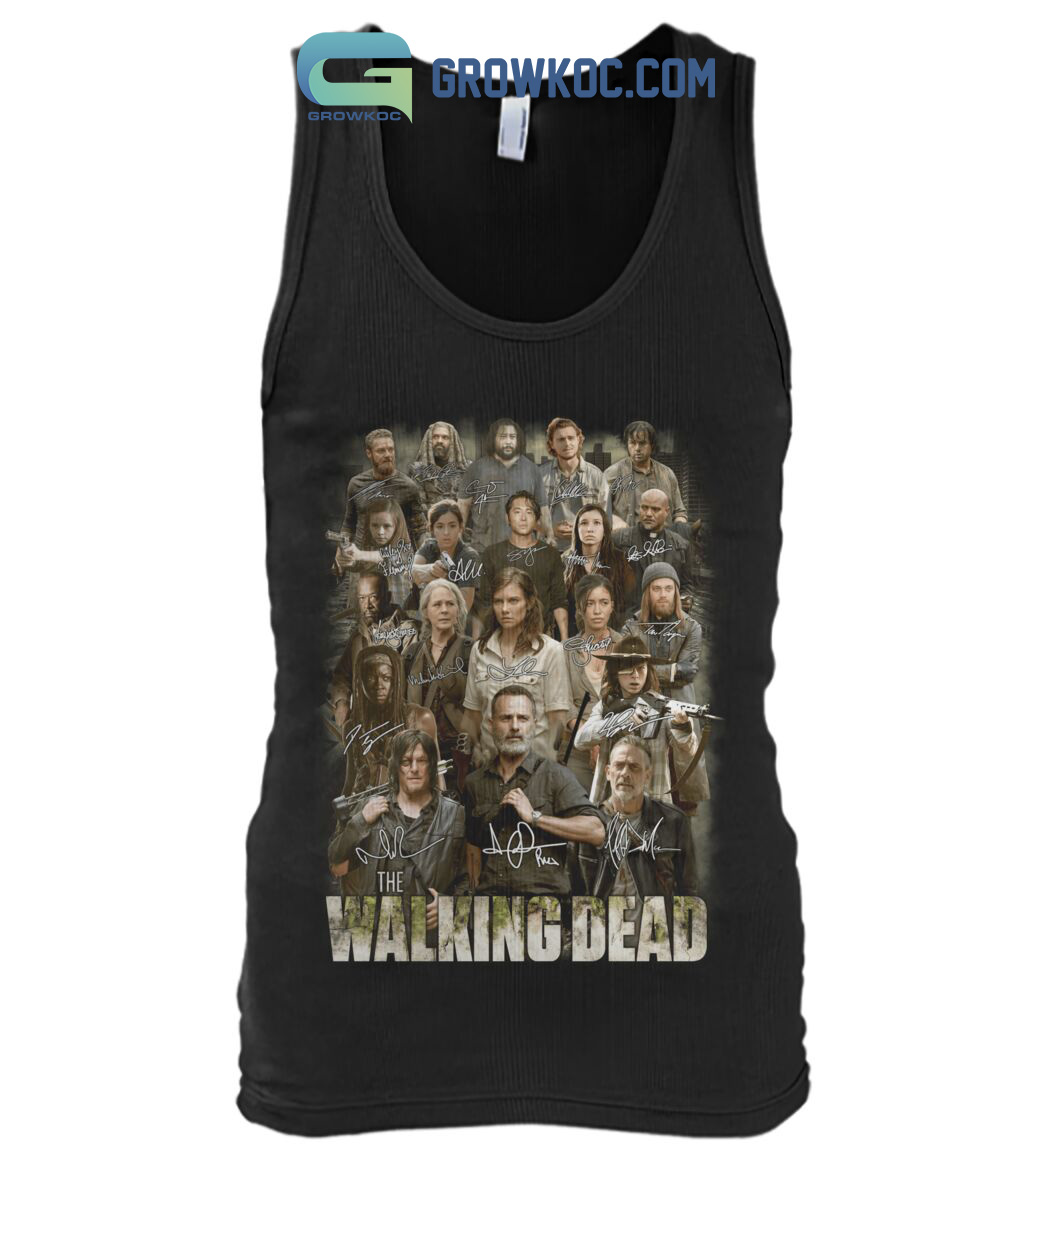 The Walking Dead Merch shirt